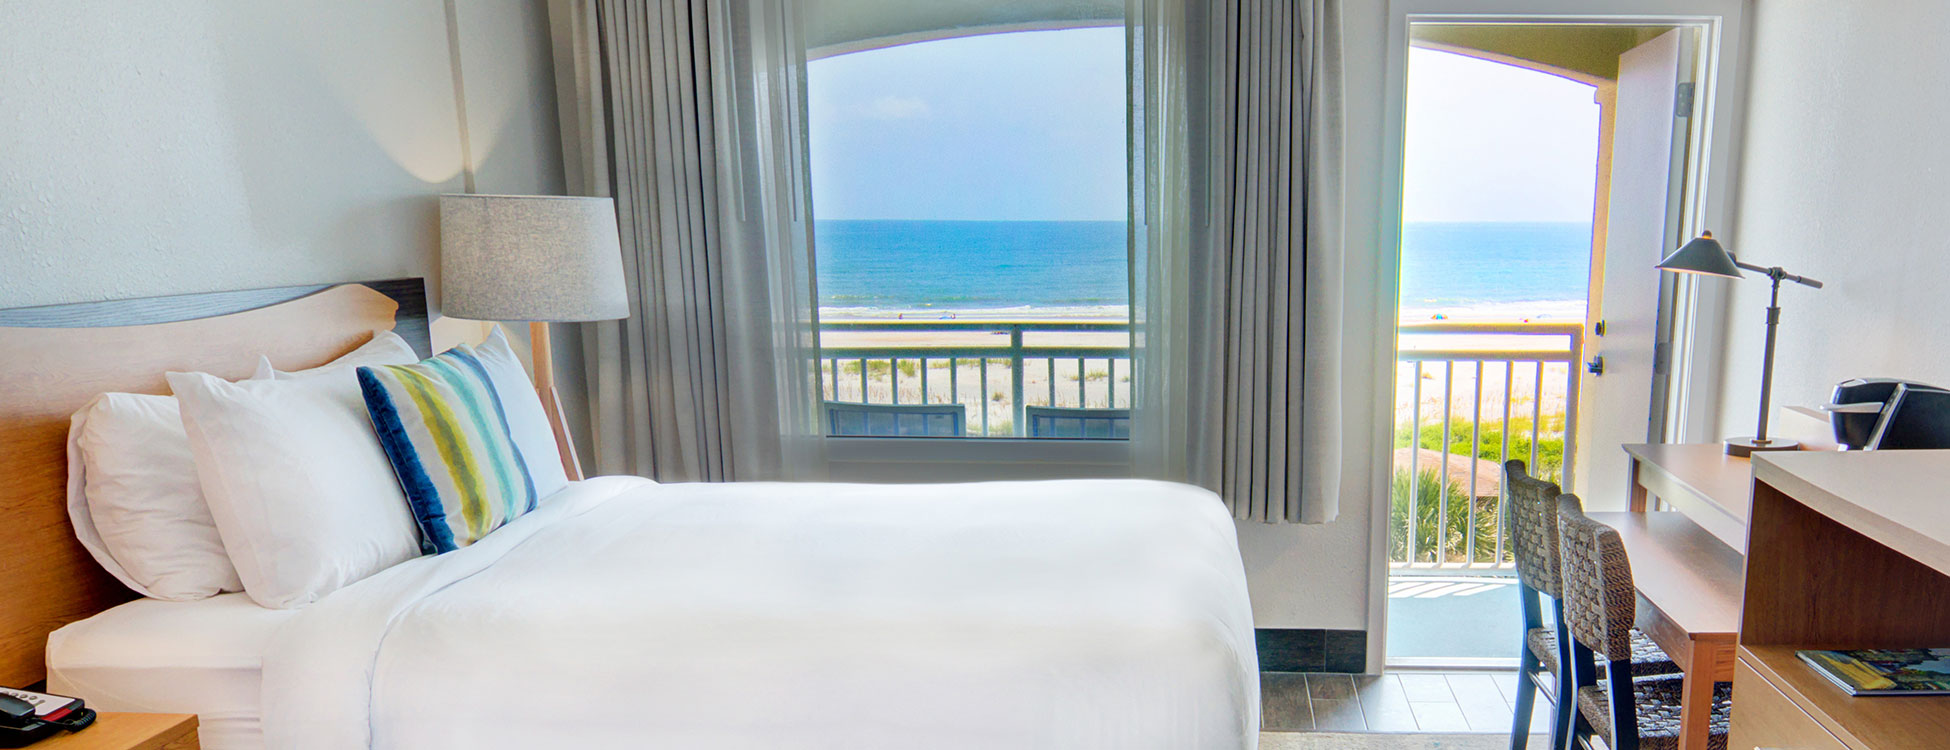 guy harvey oceanfront resort view from oceanfront guest room